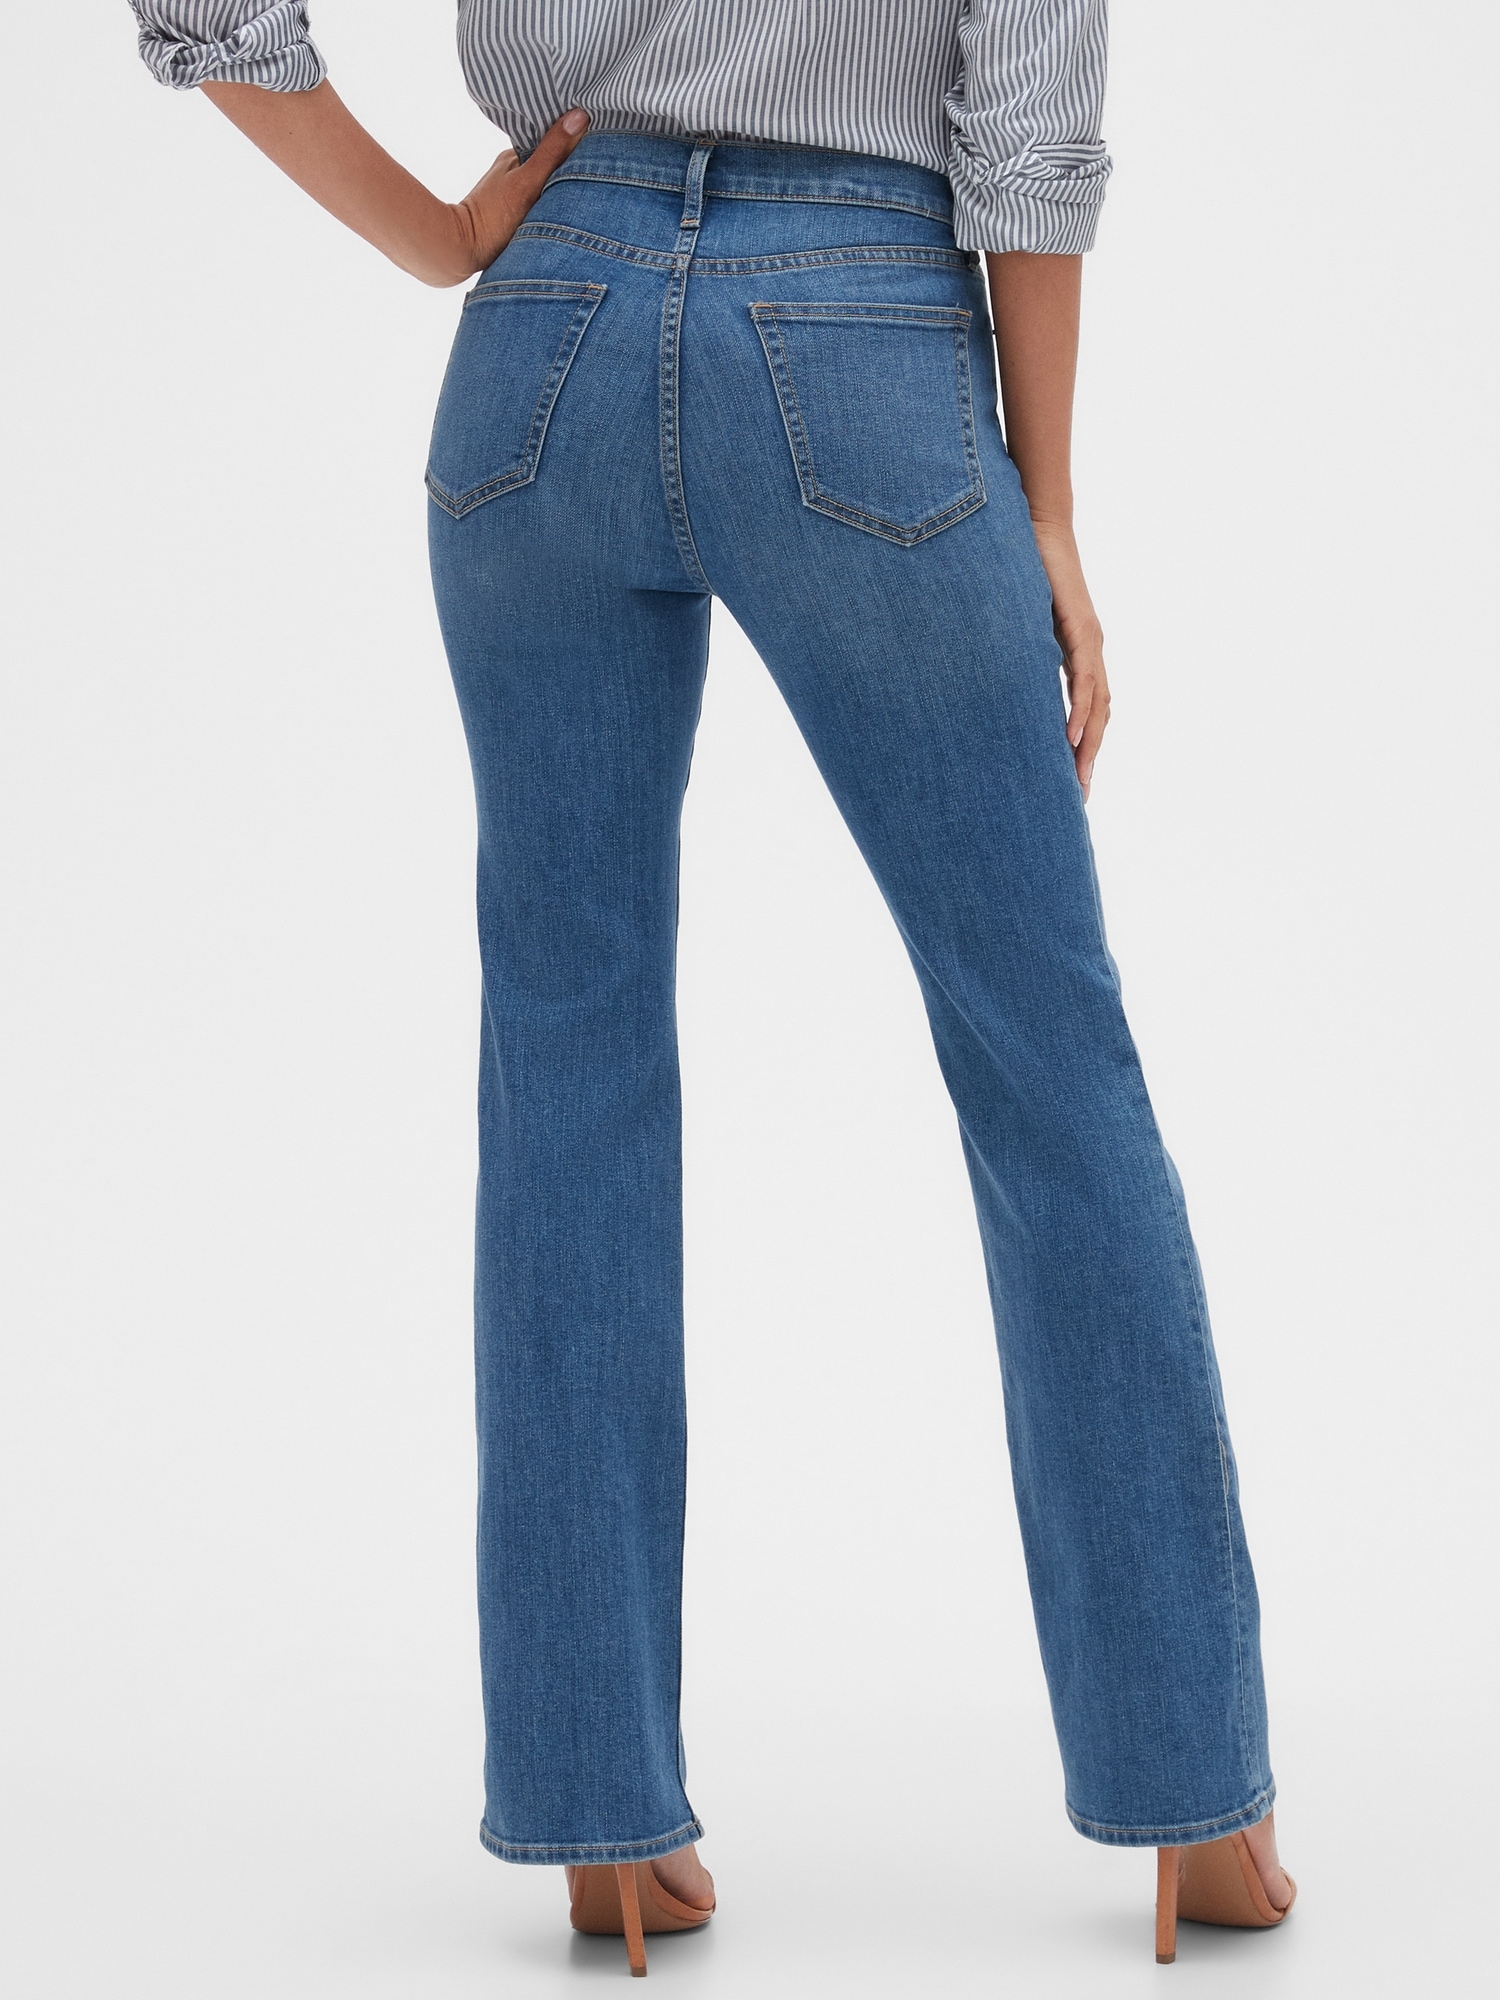 Apotheke unbezahlt mich selber gap bootcut jeans womens Metropolitan ...